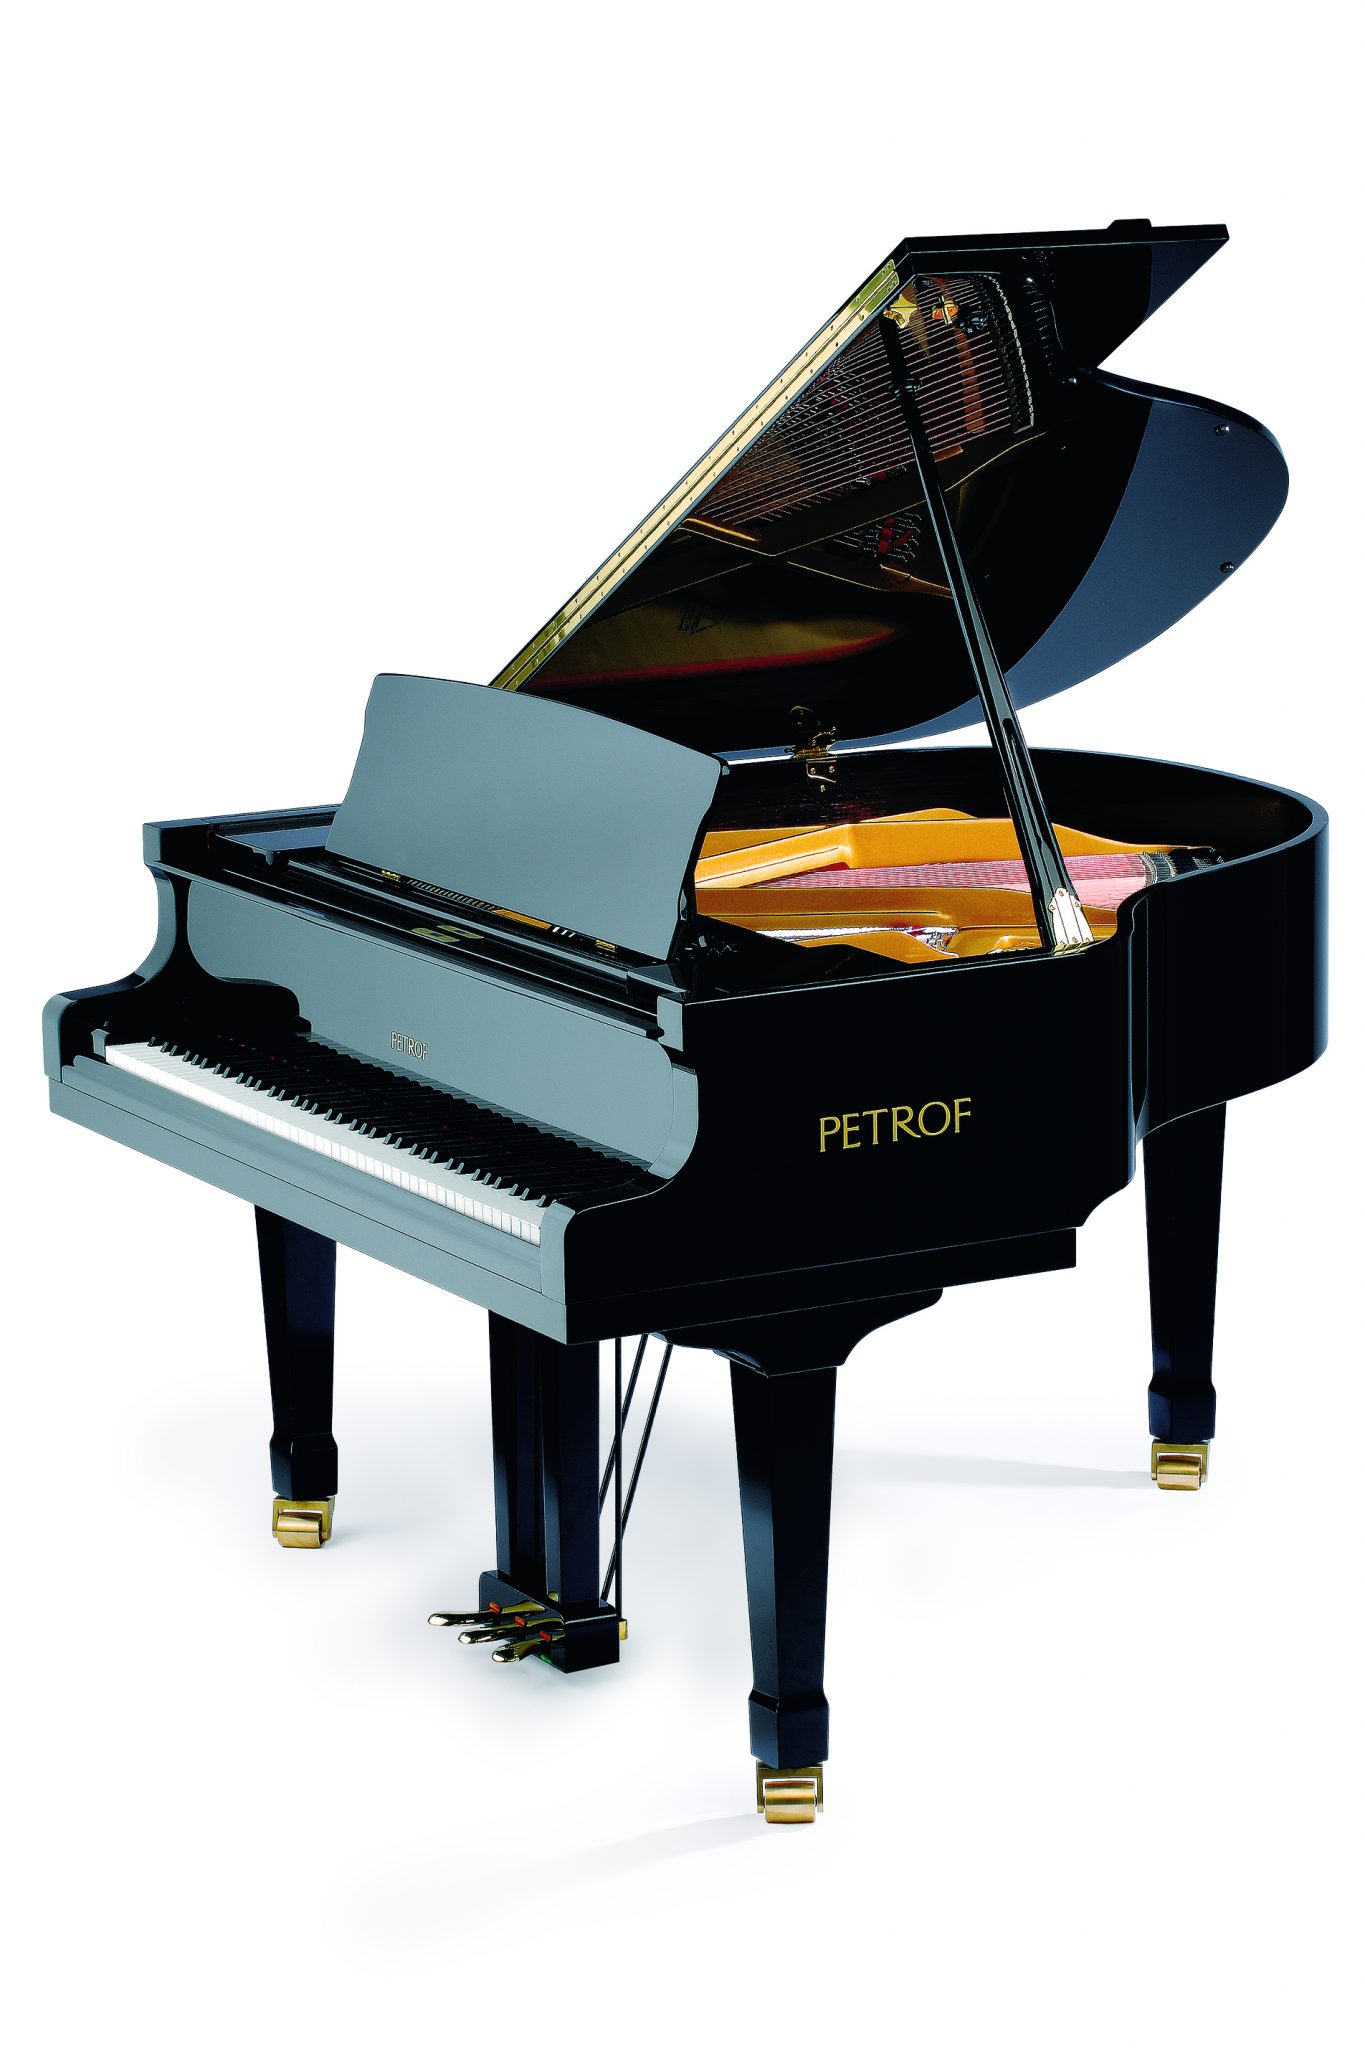 در هر وضعیتی انتخاب تیونر یا گوش برای کوک کردن پیانو می تواند یک انتخاب مهم باشد .